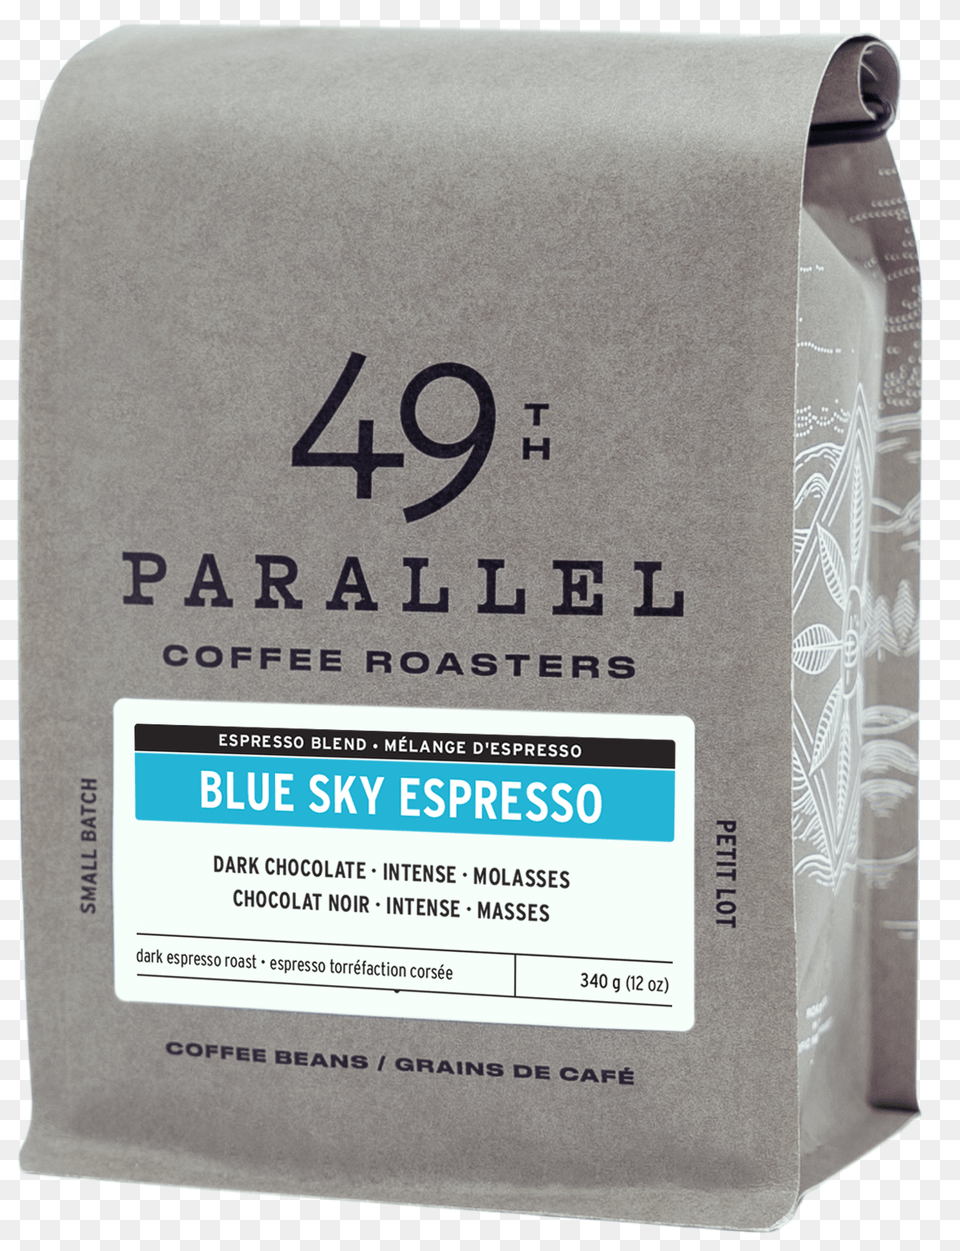 Blue Sky Espresso Carton, Mailbox Png Image